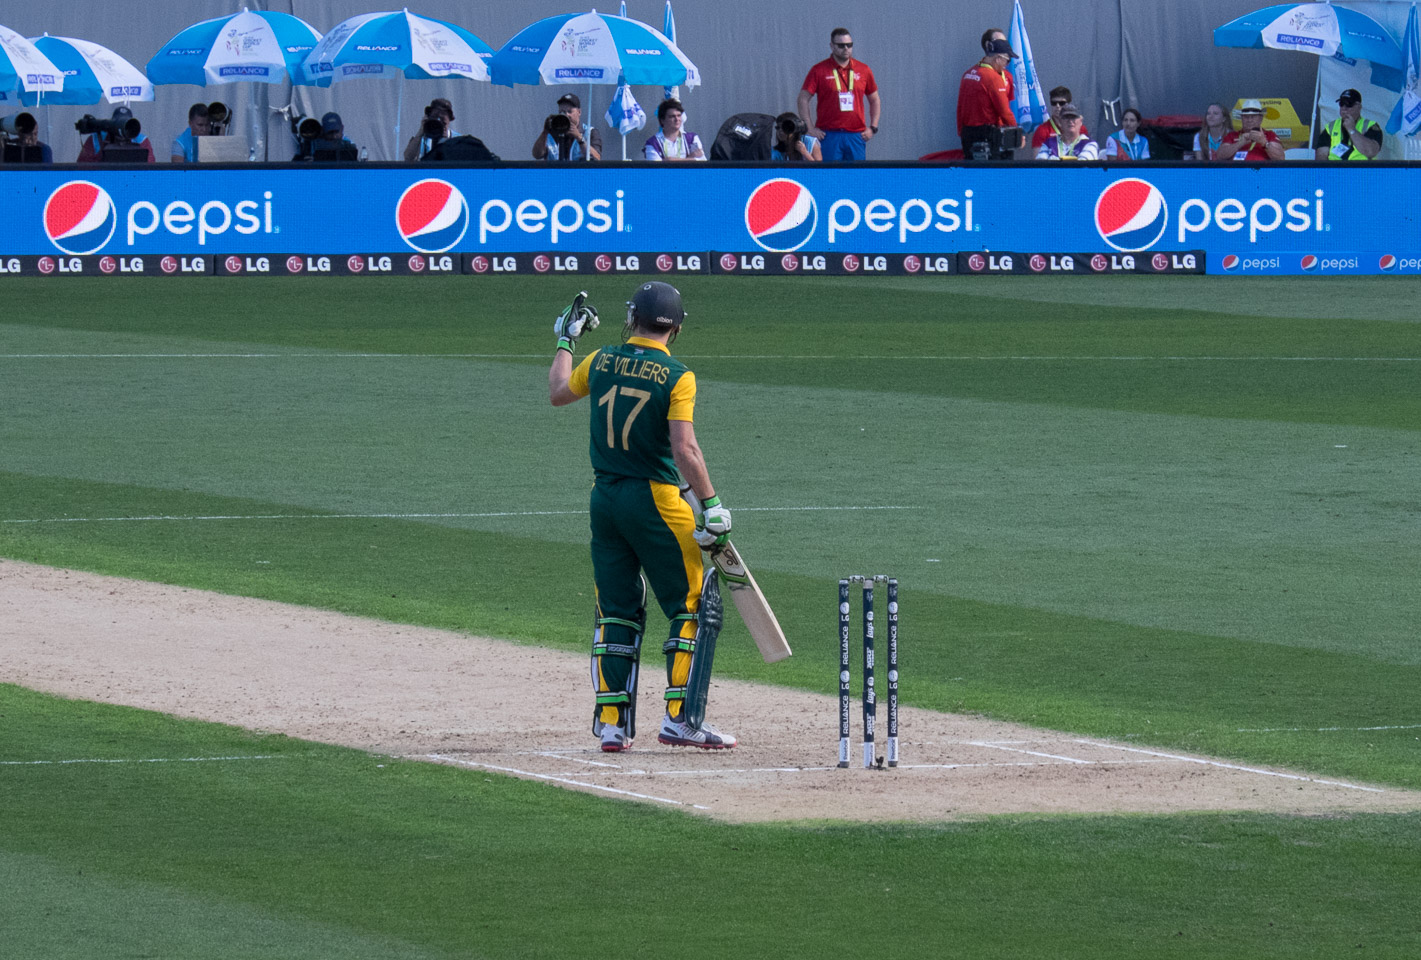 De Villiers comes to bat